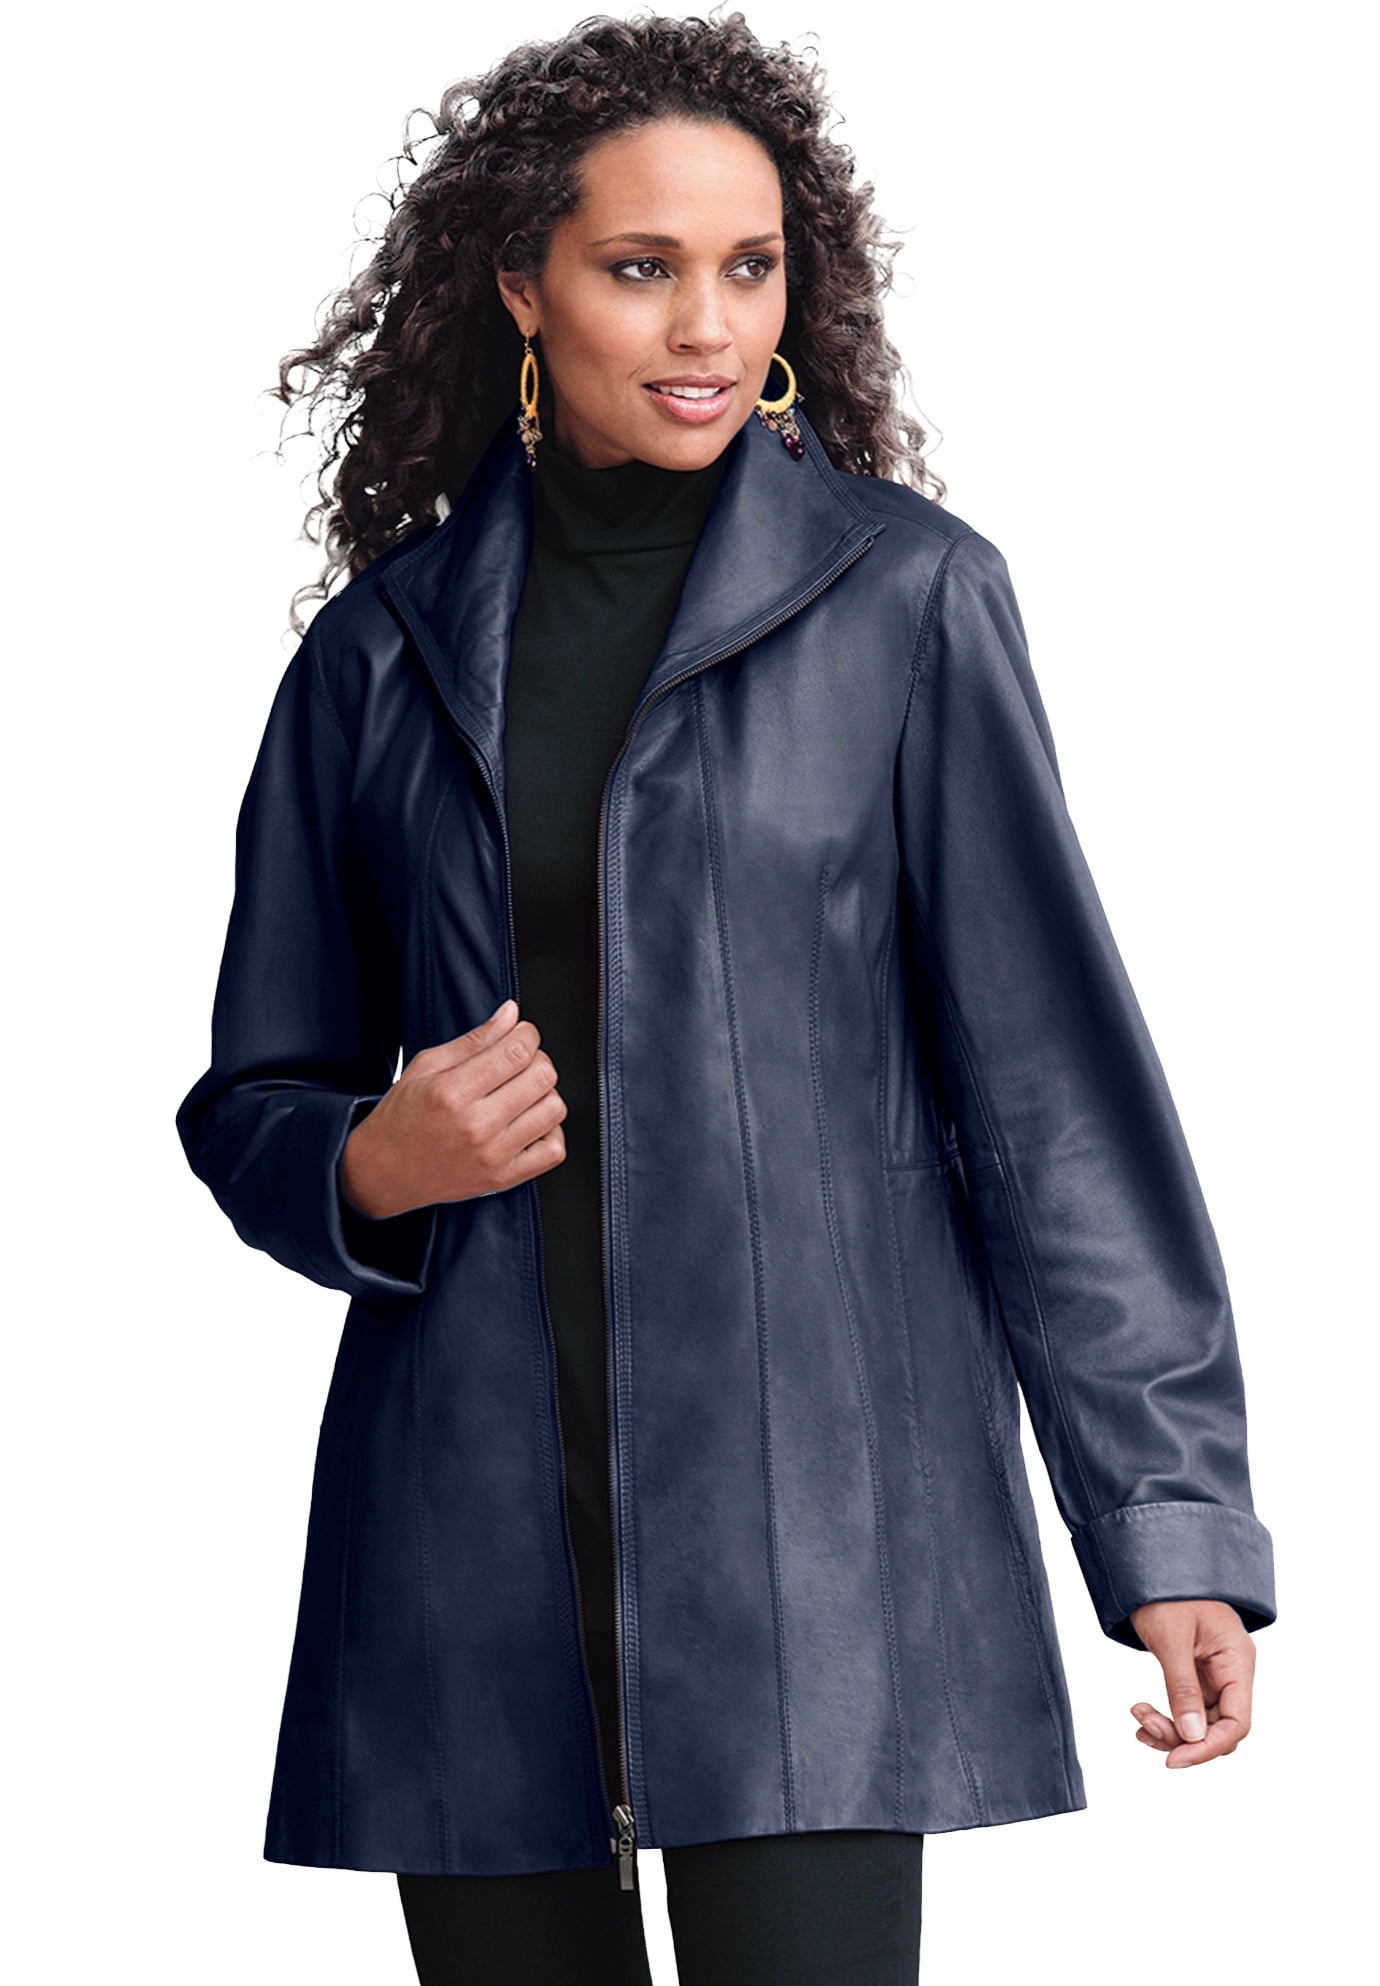 Skal makeup oprindelse Roaman's Women's Plus Size A-Line Leather Jacket Leather Jacket -  Walmart.com